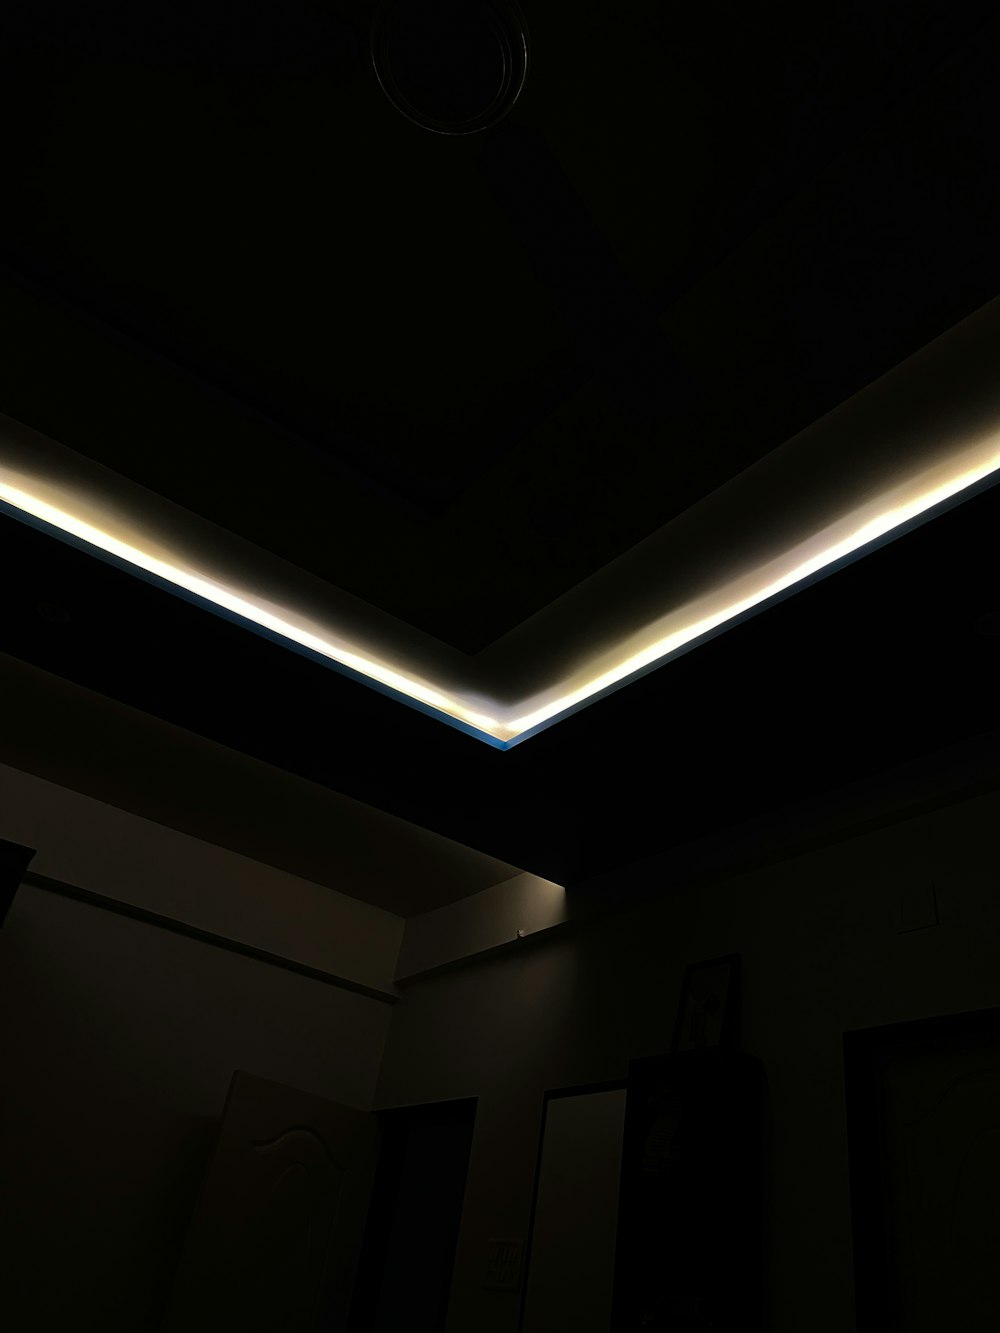 Una habitación oscura con una luz en el techo